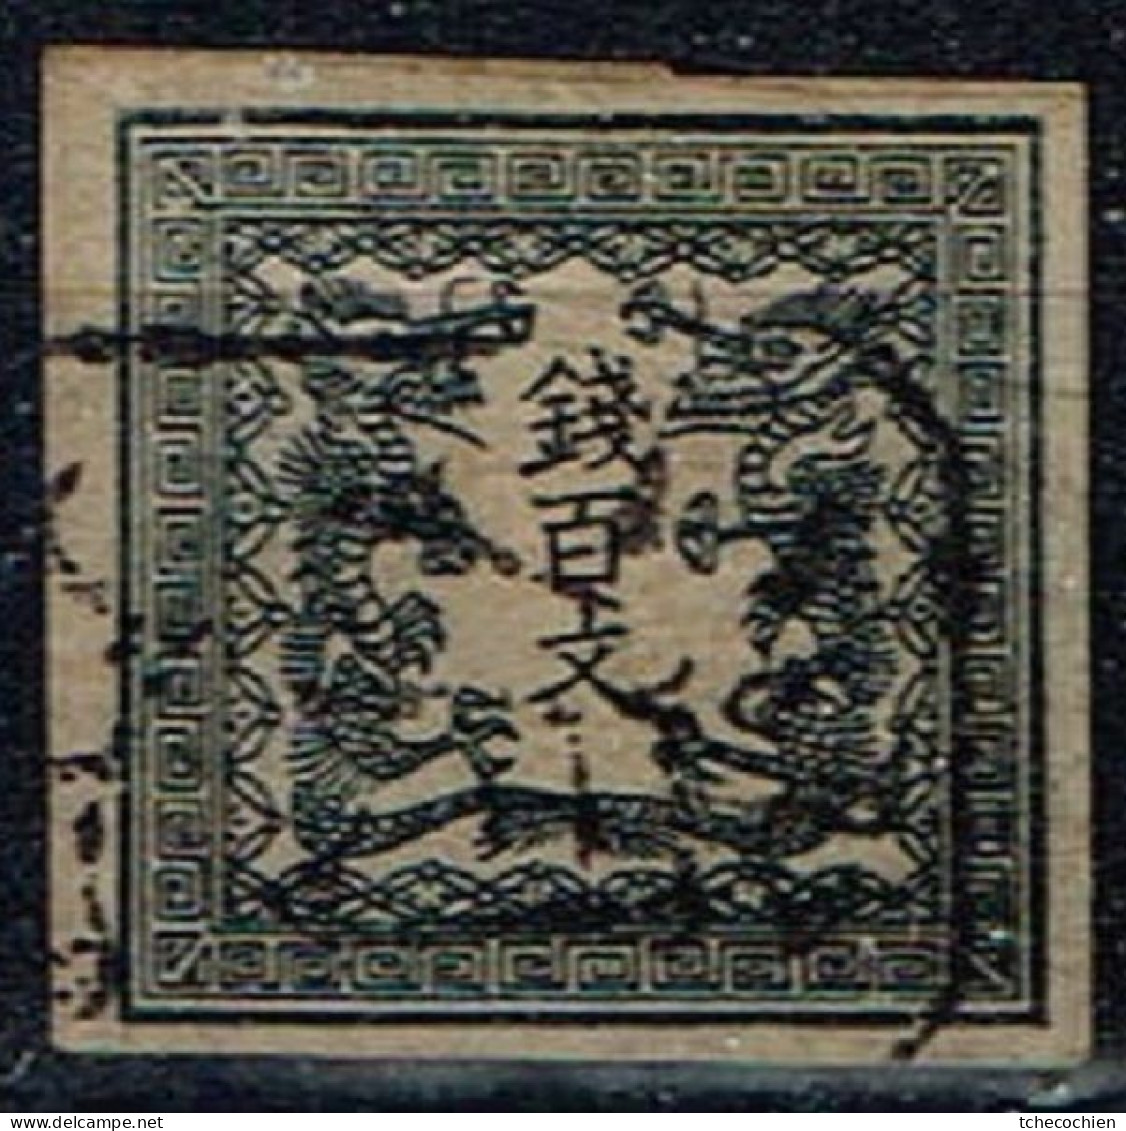 Japon - 1871 - Y&T N° 2 B, Oblitéré. Papier Mince Uni. - Usati